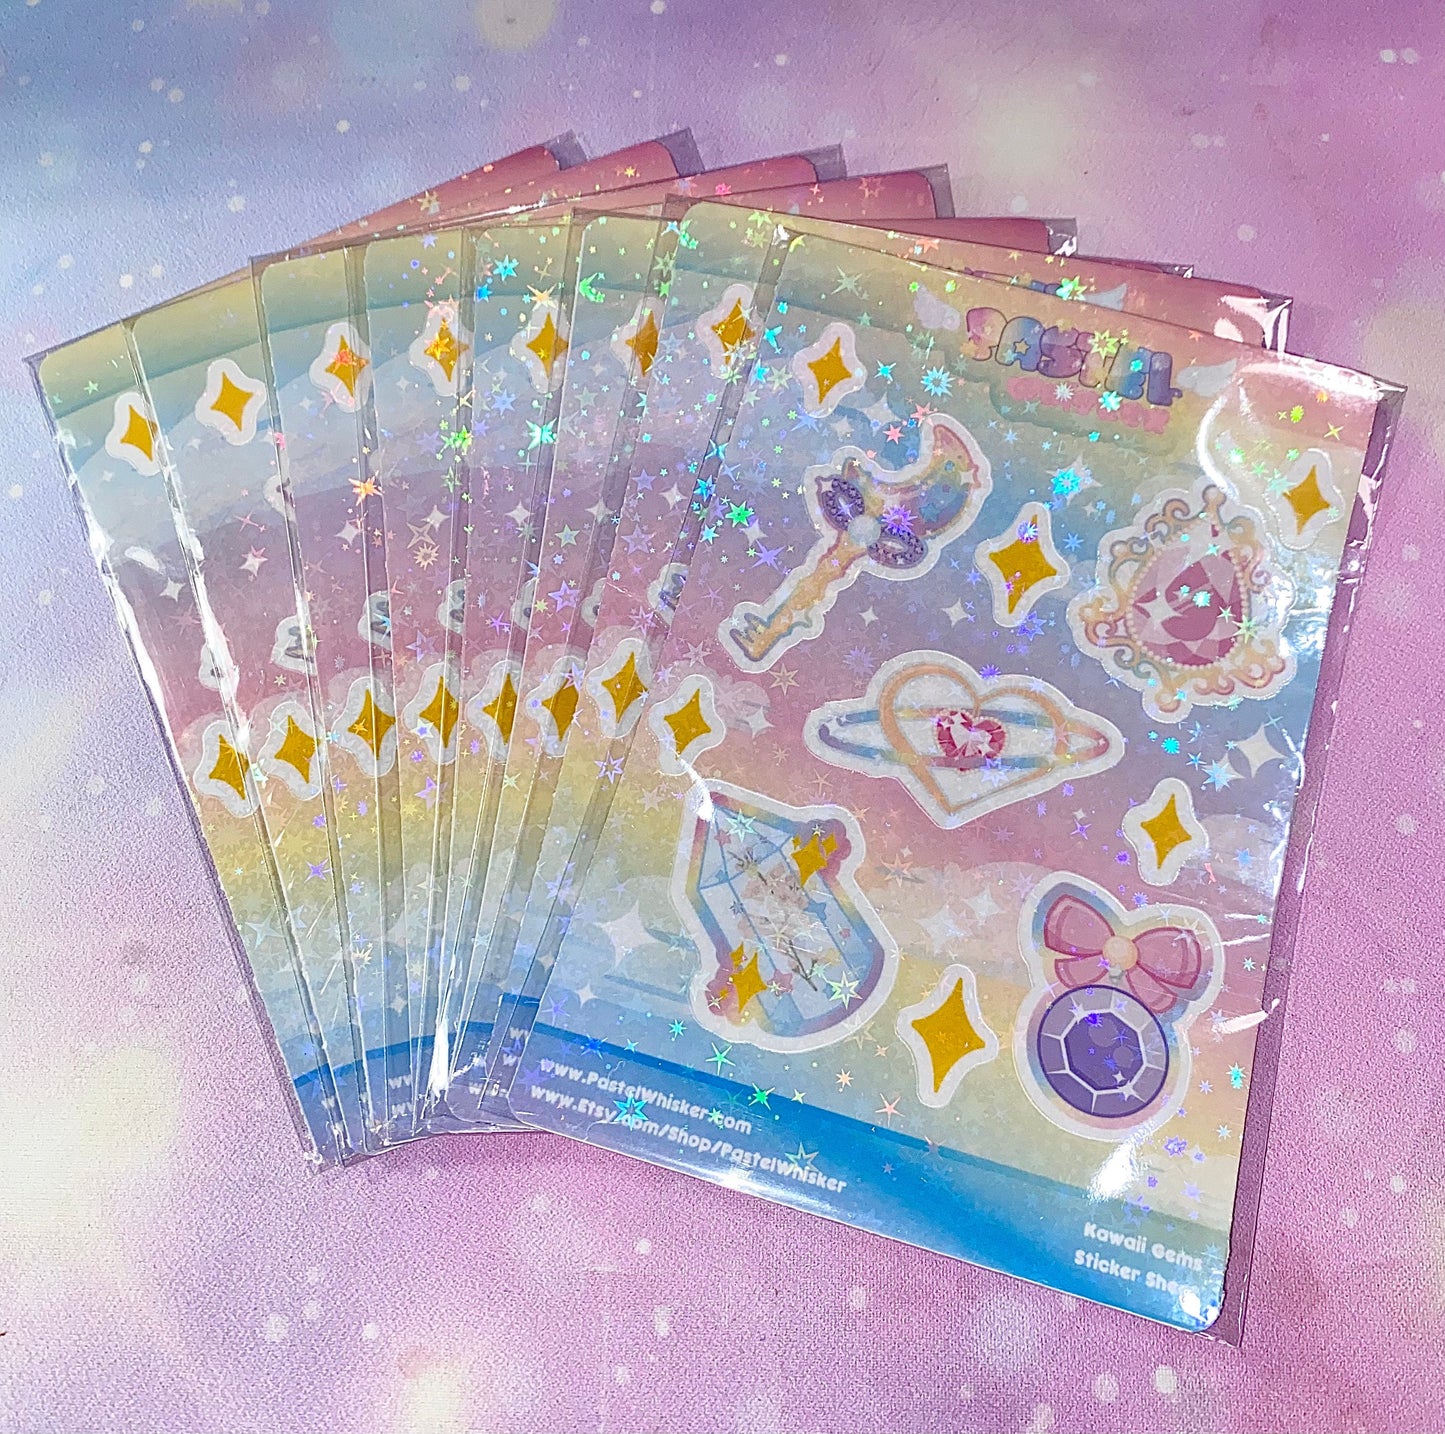 kawaii Gems sticker sheet | gem stickers, cute gemstones, Kawaii stickers, girly stickers, gemstones, Kawaii gems